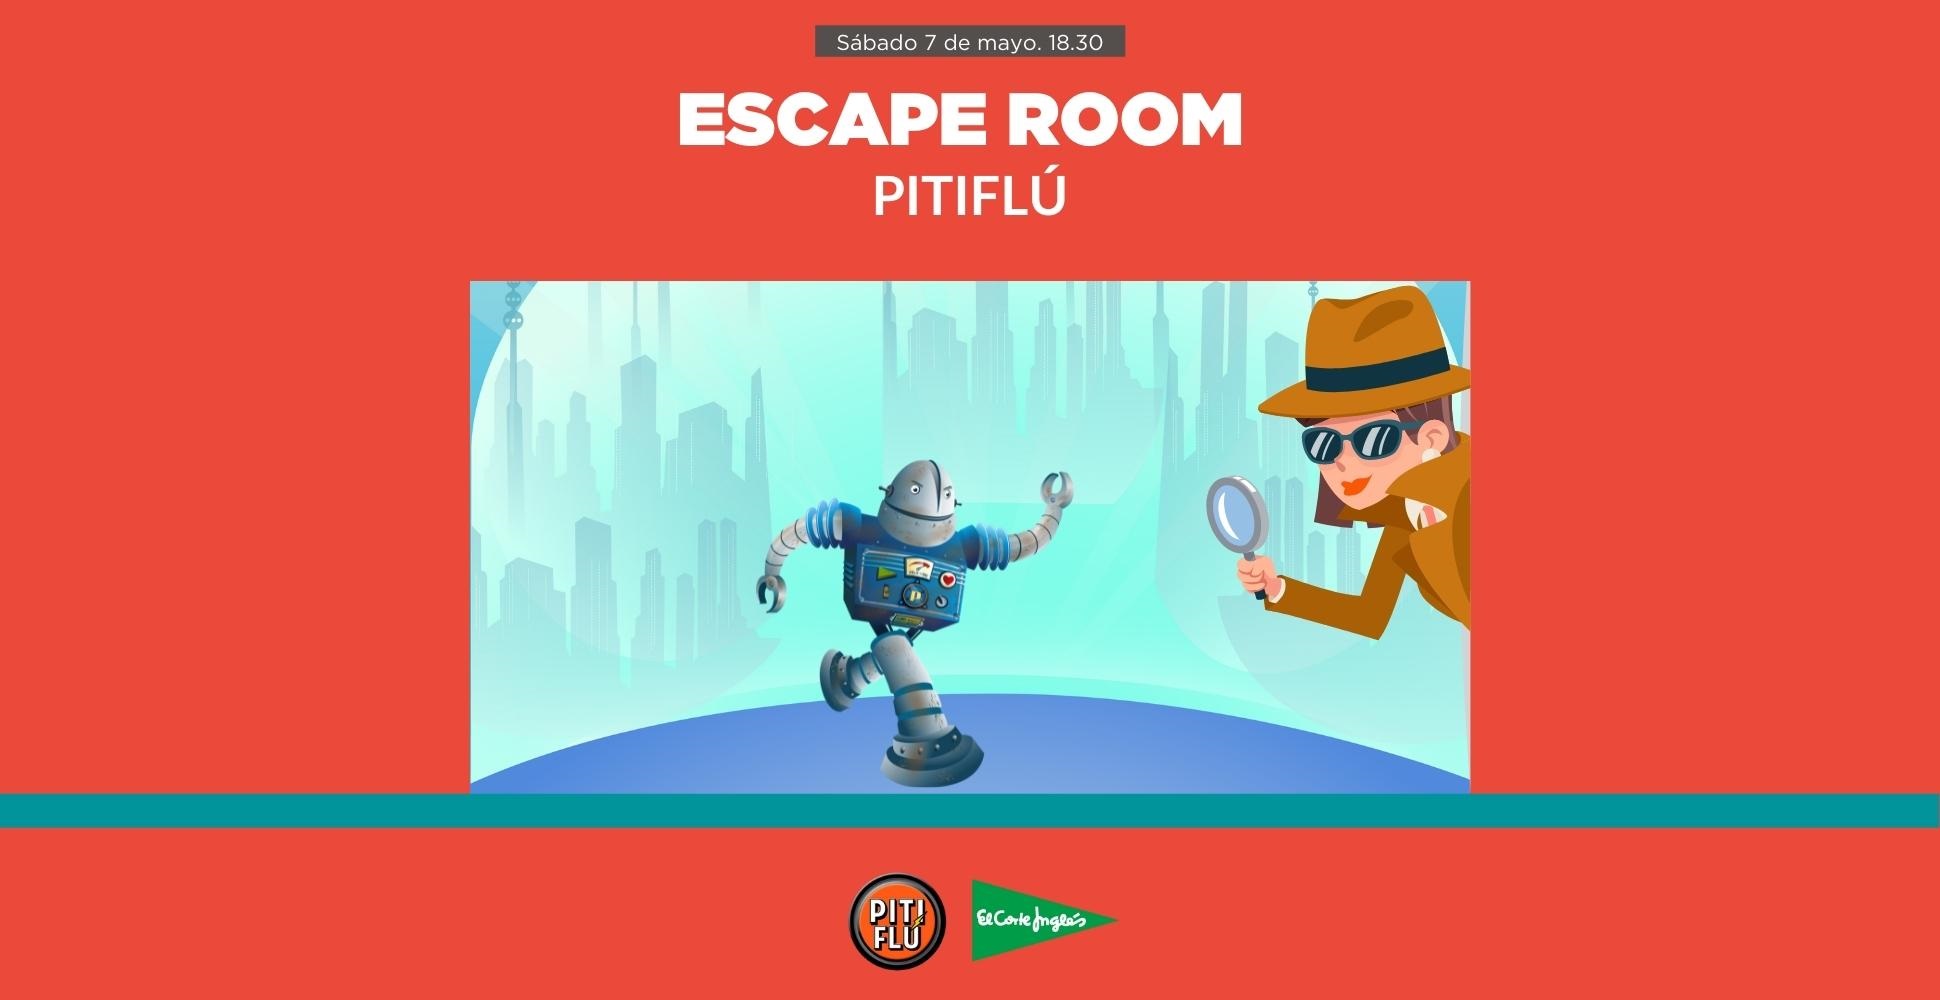 Imagen del evento Escape room Pitiflú